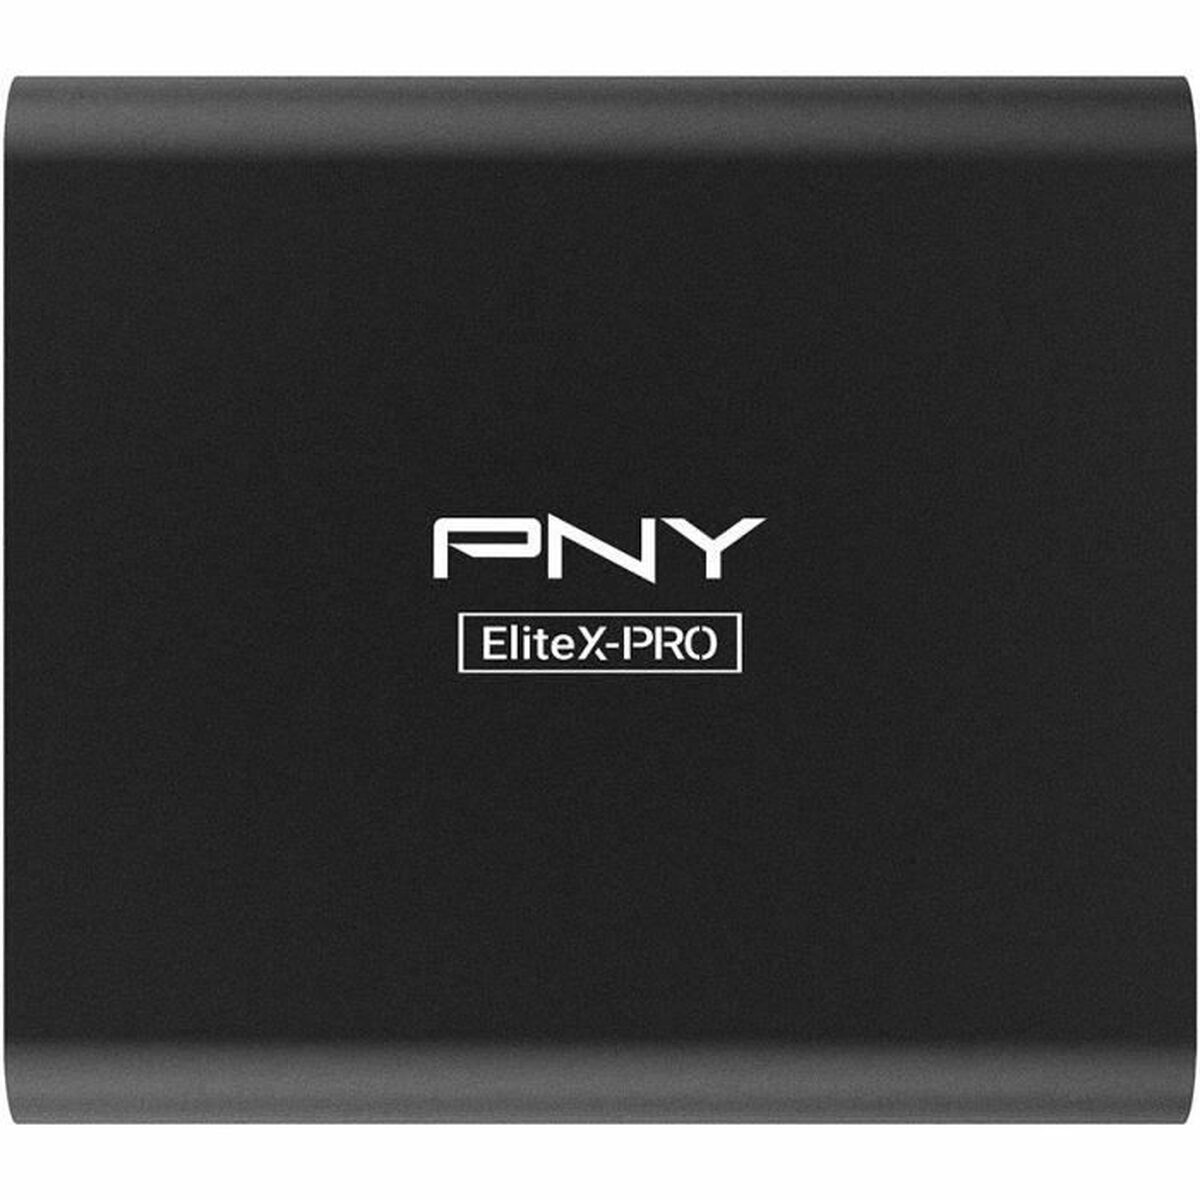 Osta tuote Ulkoinen kovalevy PNY X-Pro 1 TB SSD verkkokaupastamme Korhone: Tietokoneet & Elektroniikka 10% alennuksella koodilla KORHONE